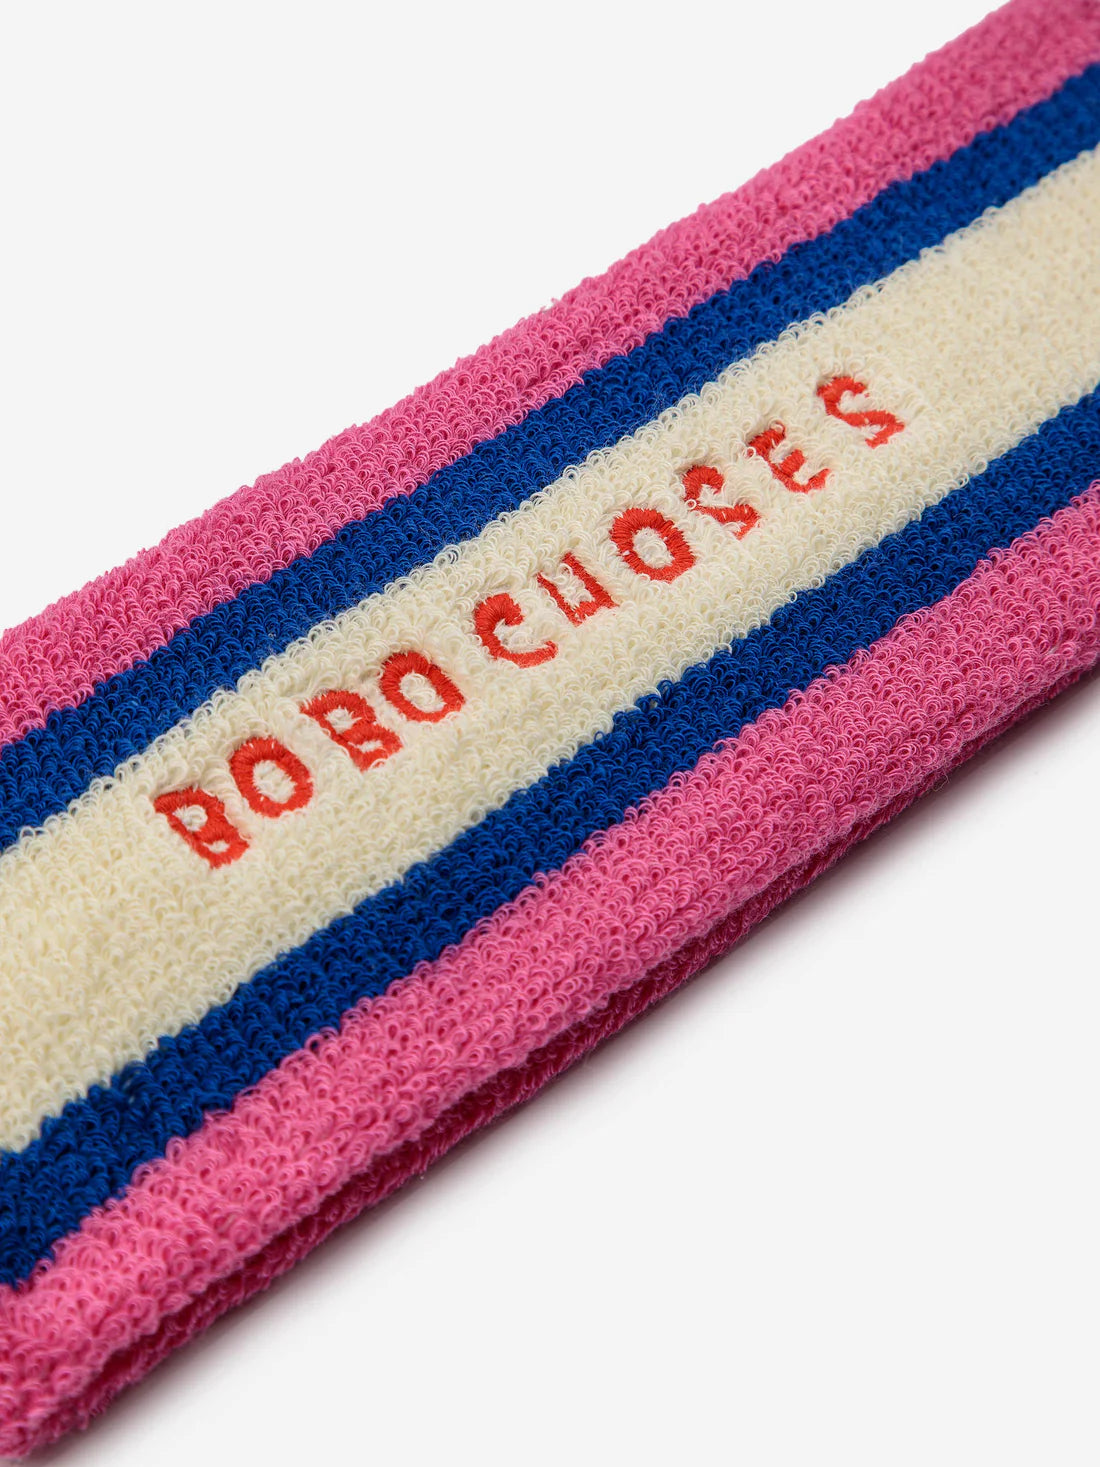 Bobo Choses - Kinder Strinband pink